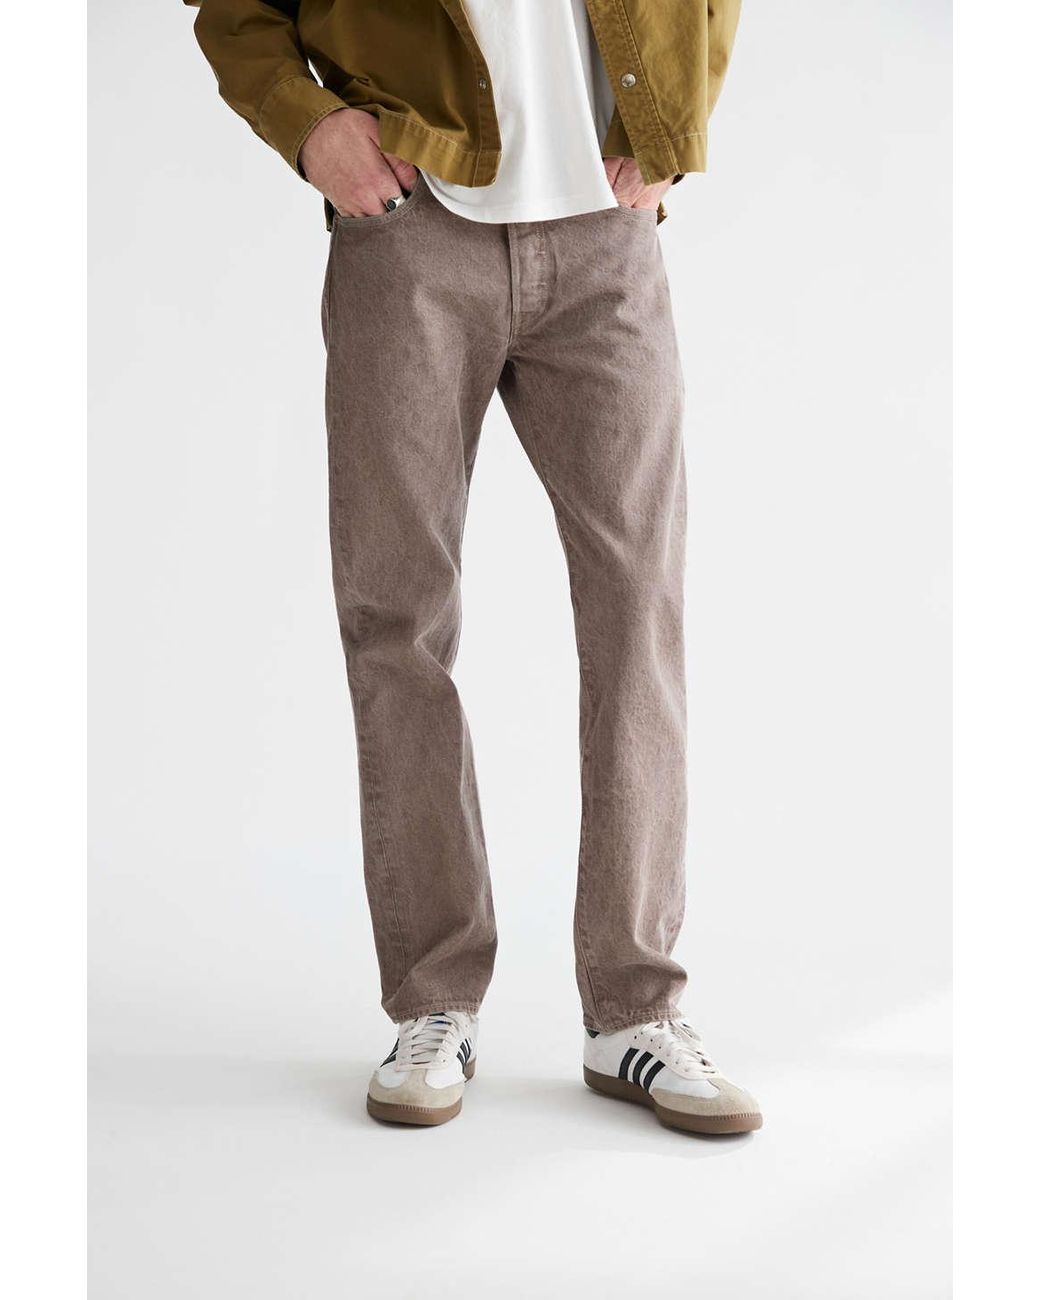 Levi's 501 Natural Dye Original Slim Fit Jean in Brown for